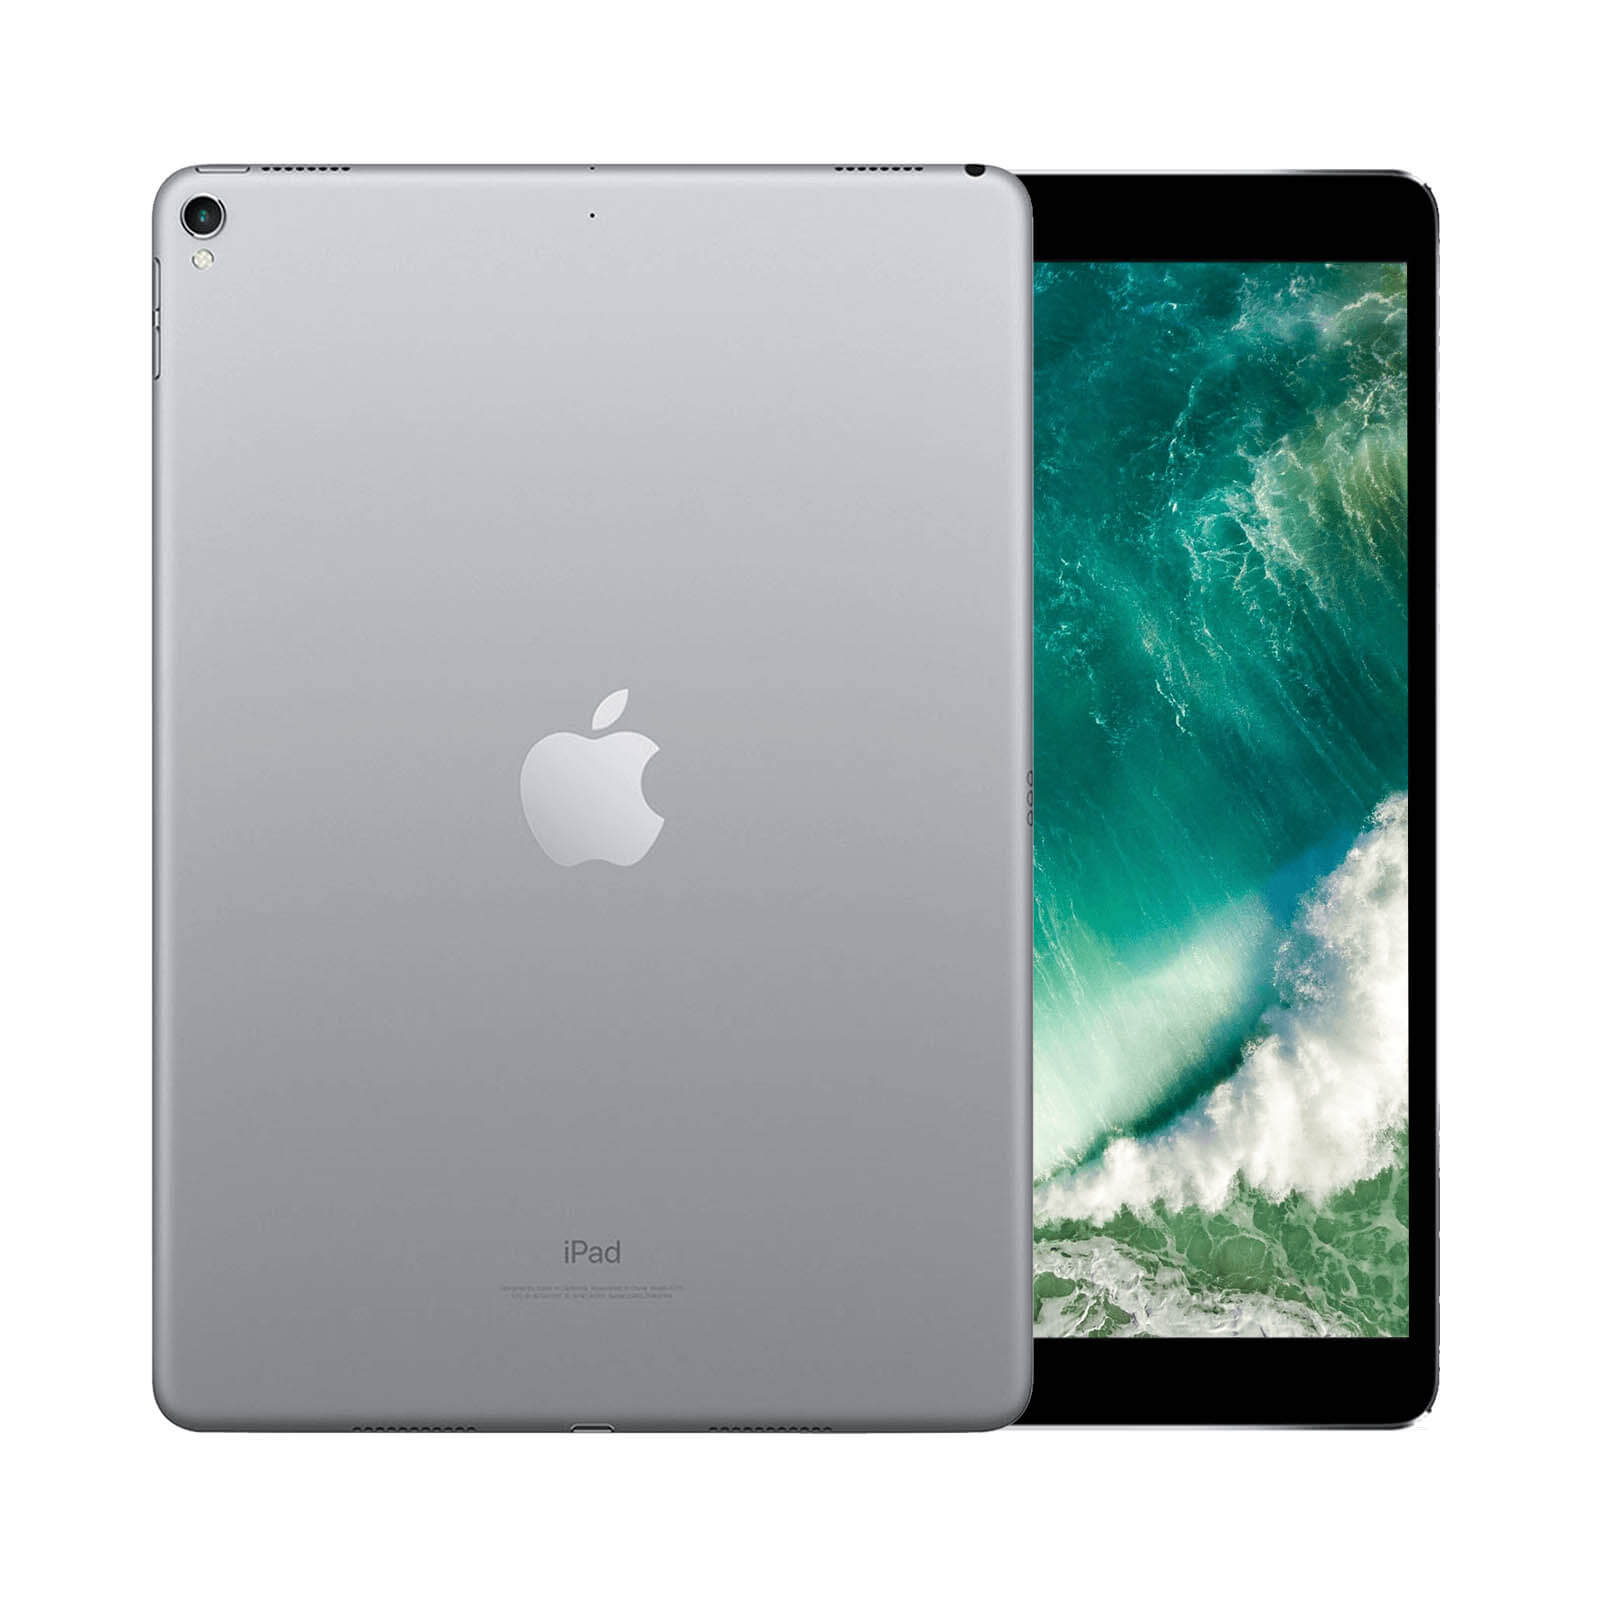 iPad Pro 10.5 Inch 512GB Rose Gold Good - WiFi